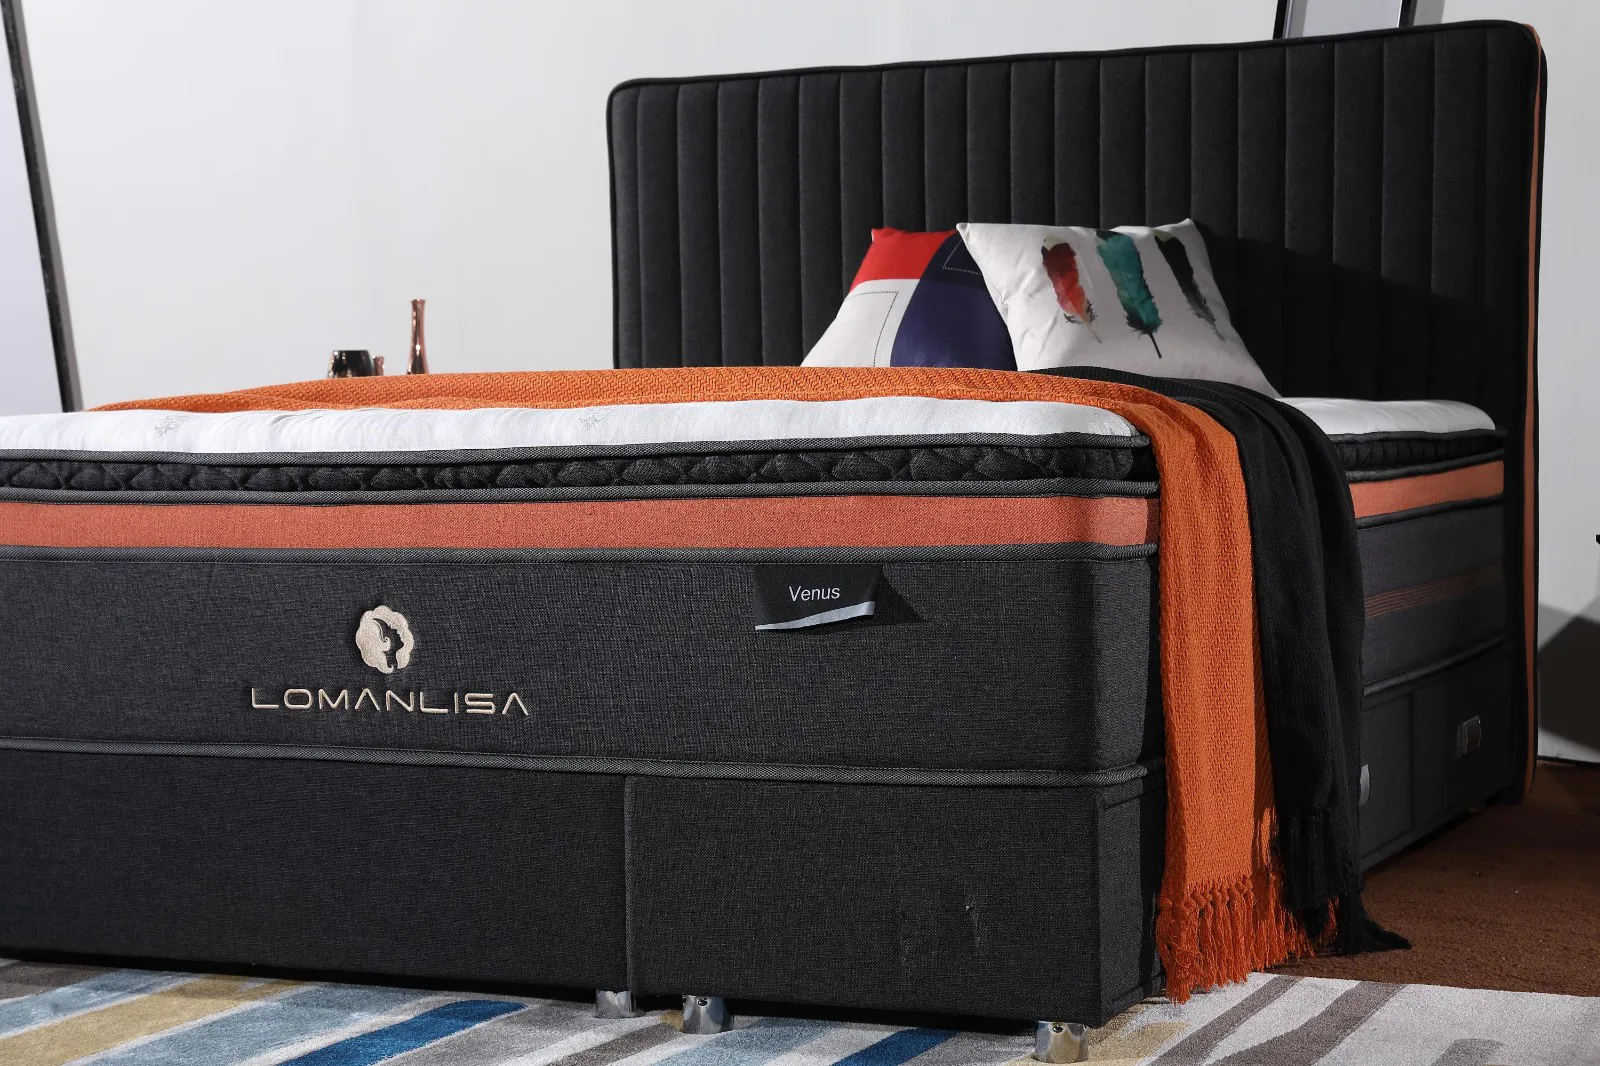 JLH Mattress rolling mattress for business with softness